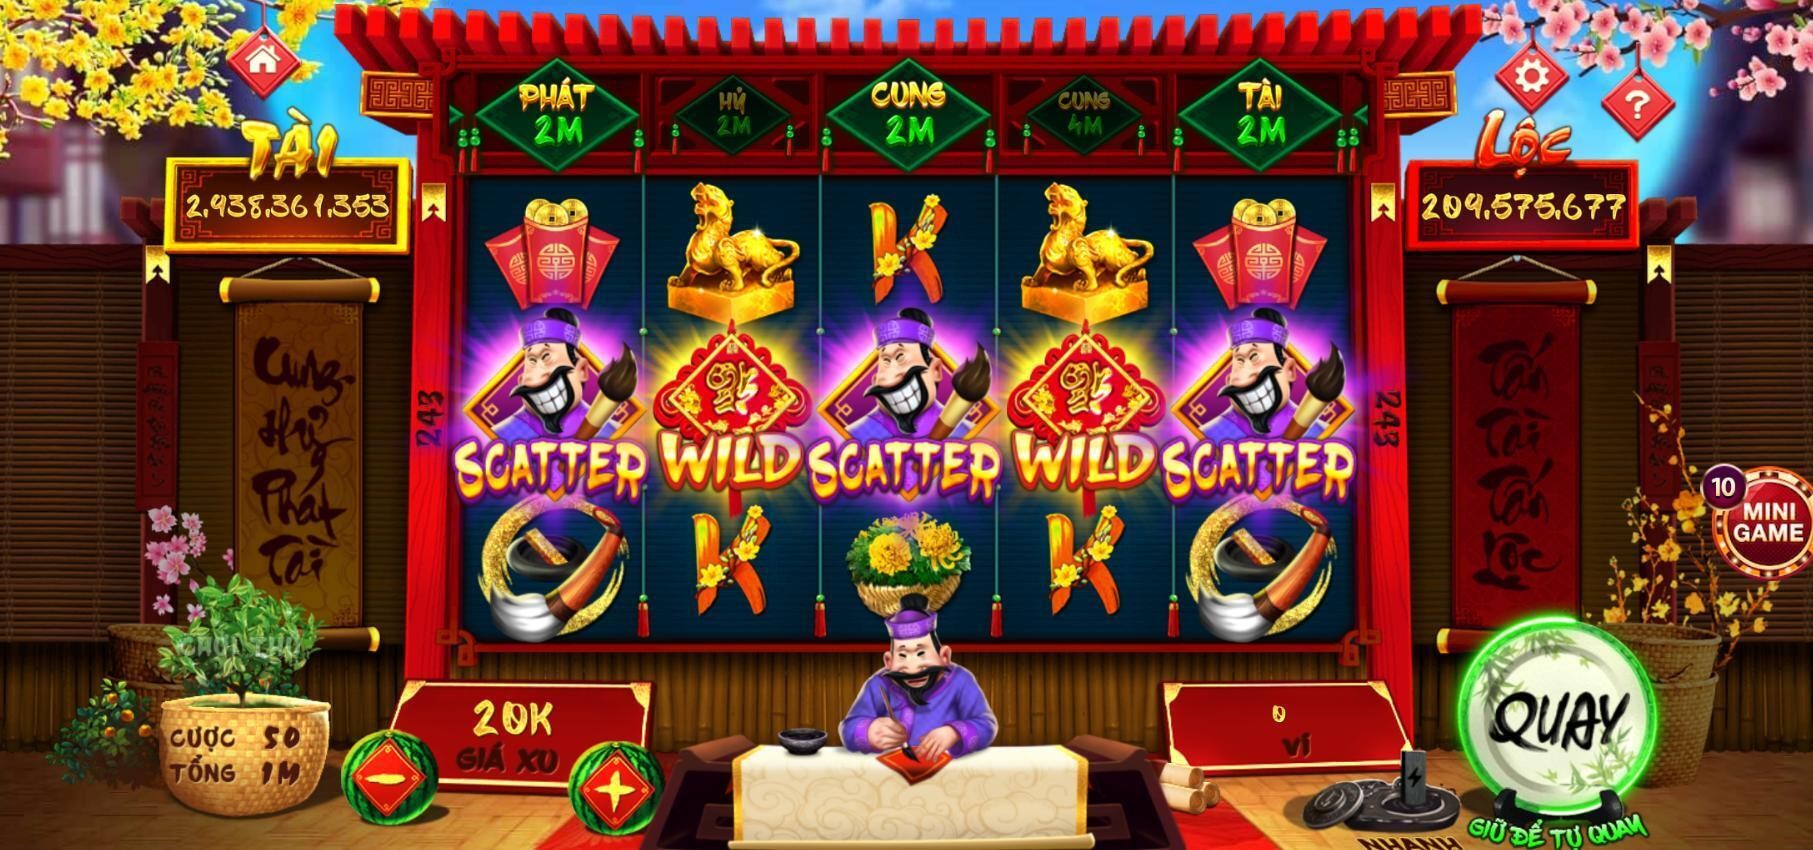 Slot nổ hũ Ông Đồ là một trò chơi online độc đáo và hấp dẫn